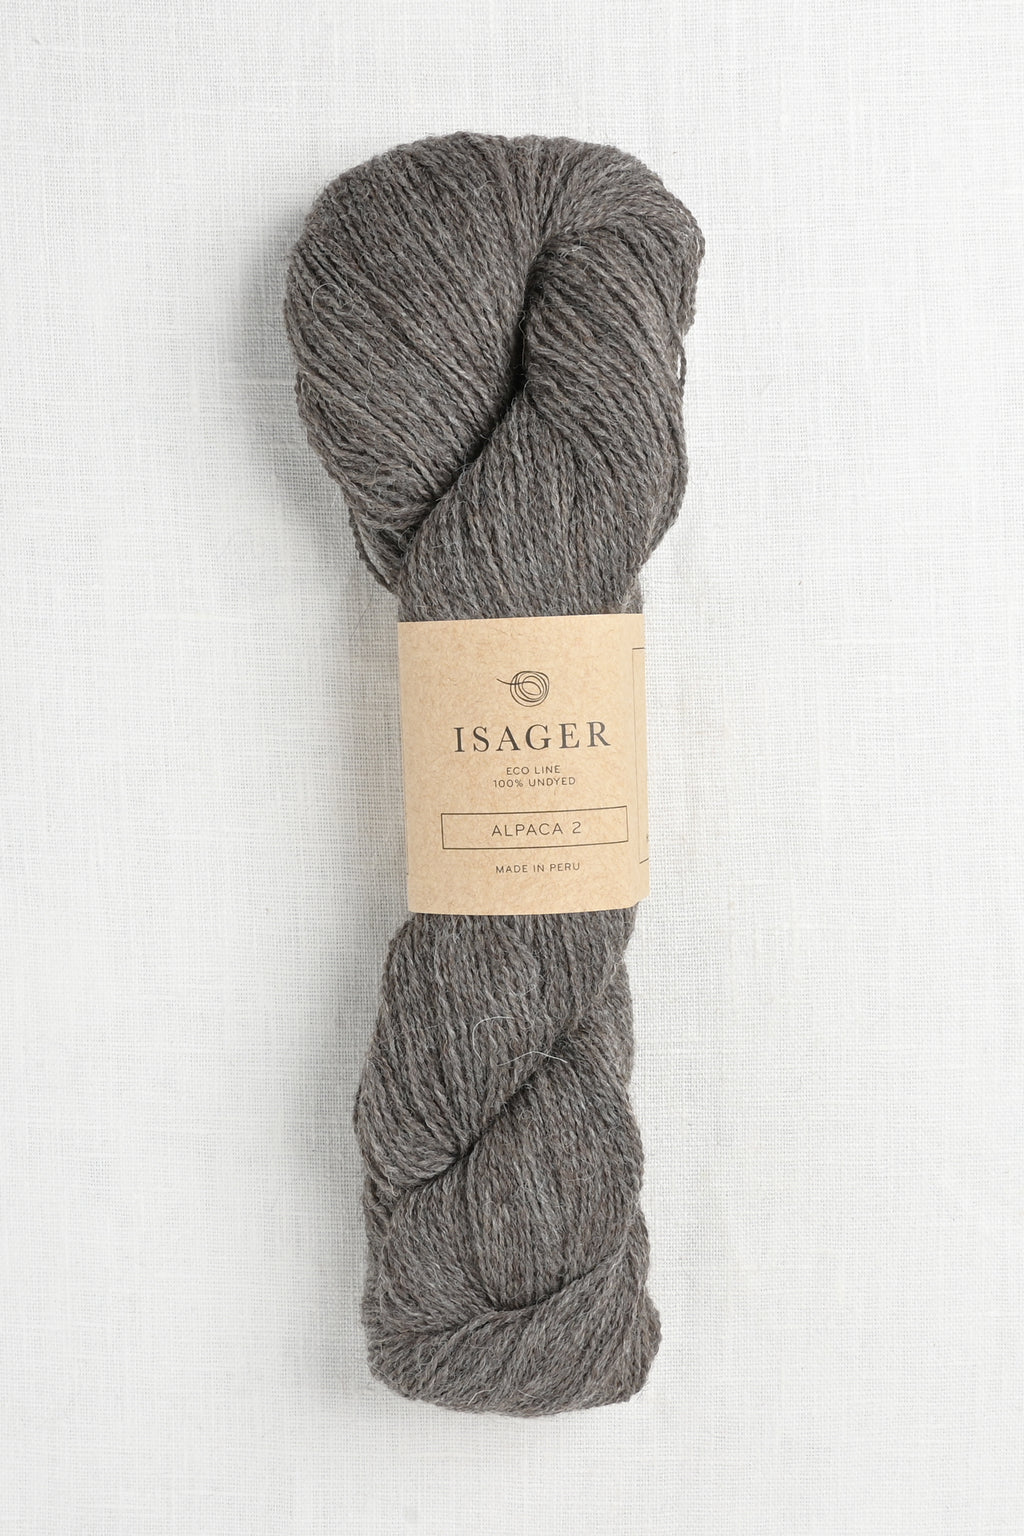 isager alpaca 2 e4s dark grey heather undyed